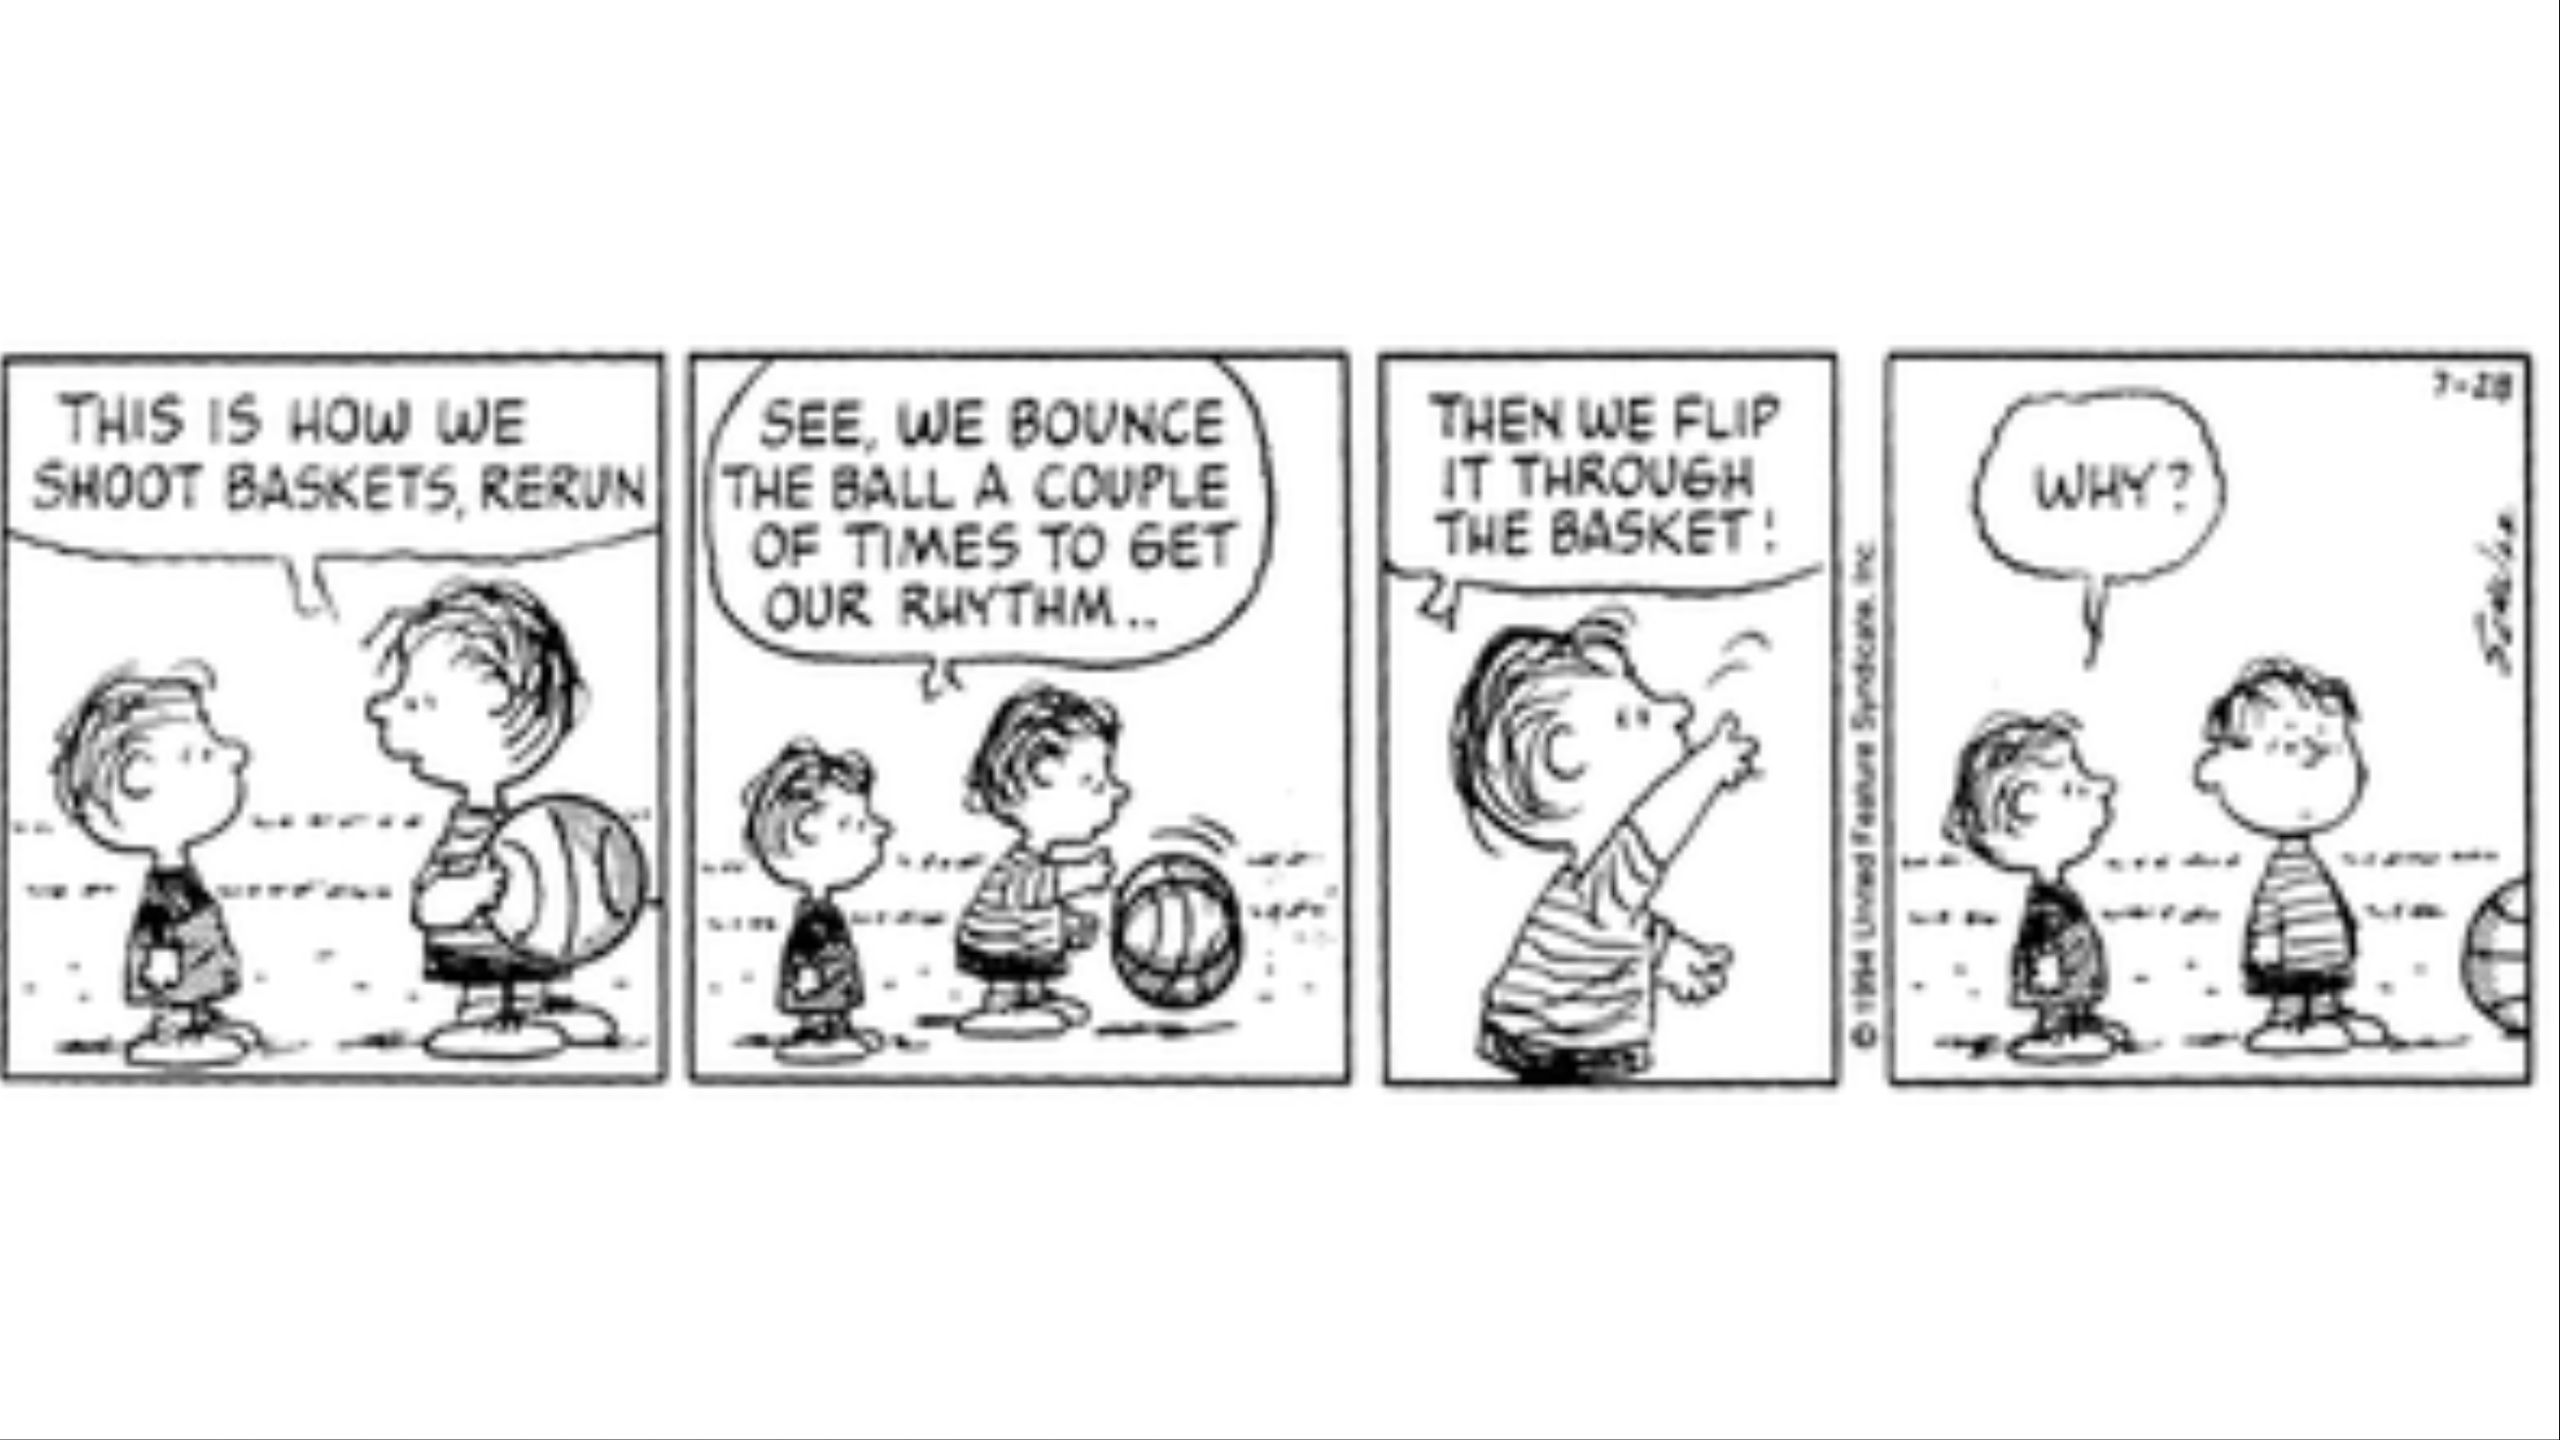 Linus teaching Rerun about basketball.